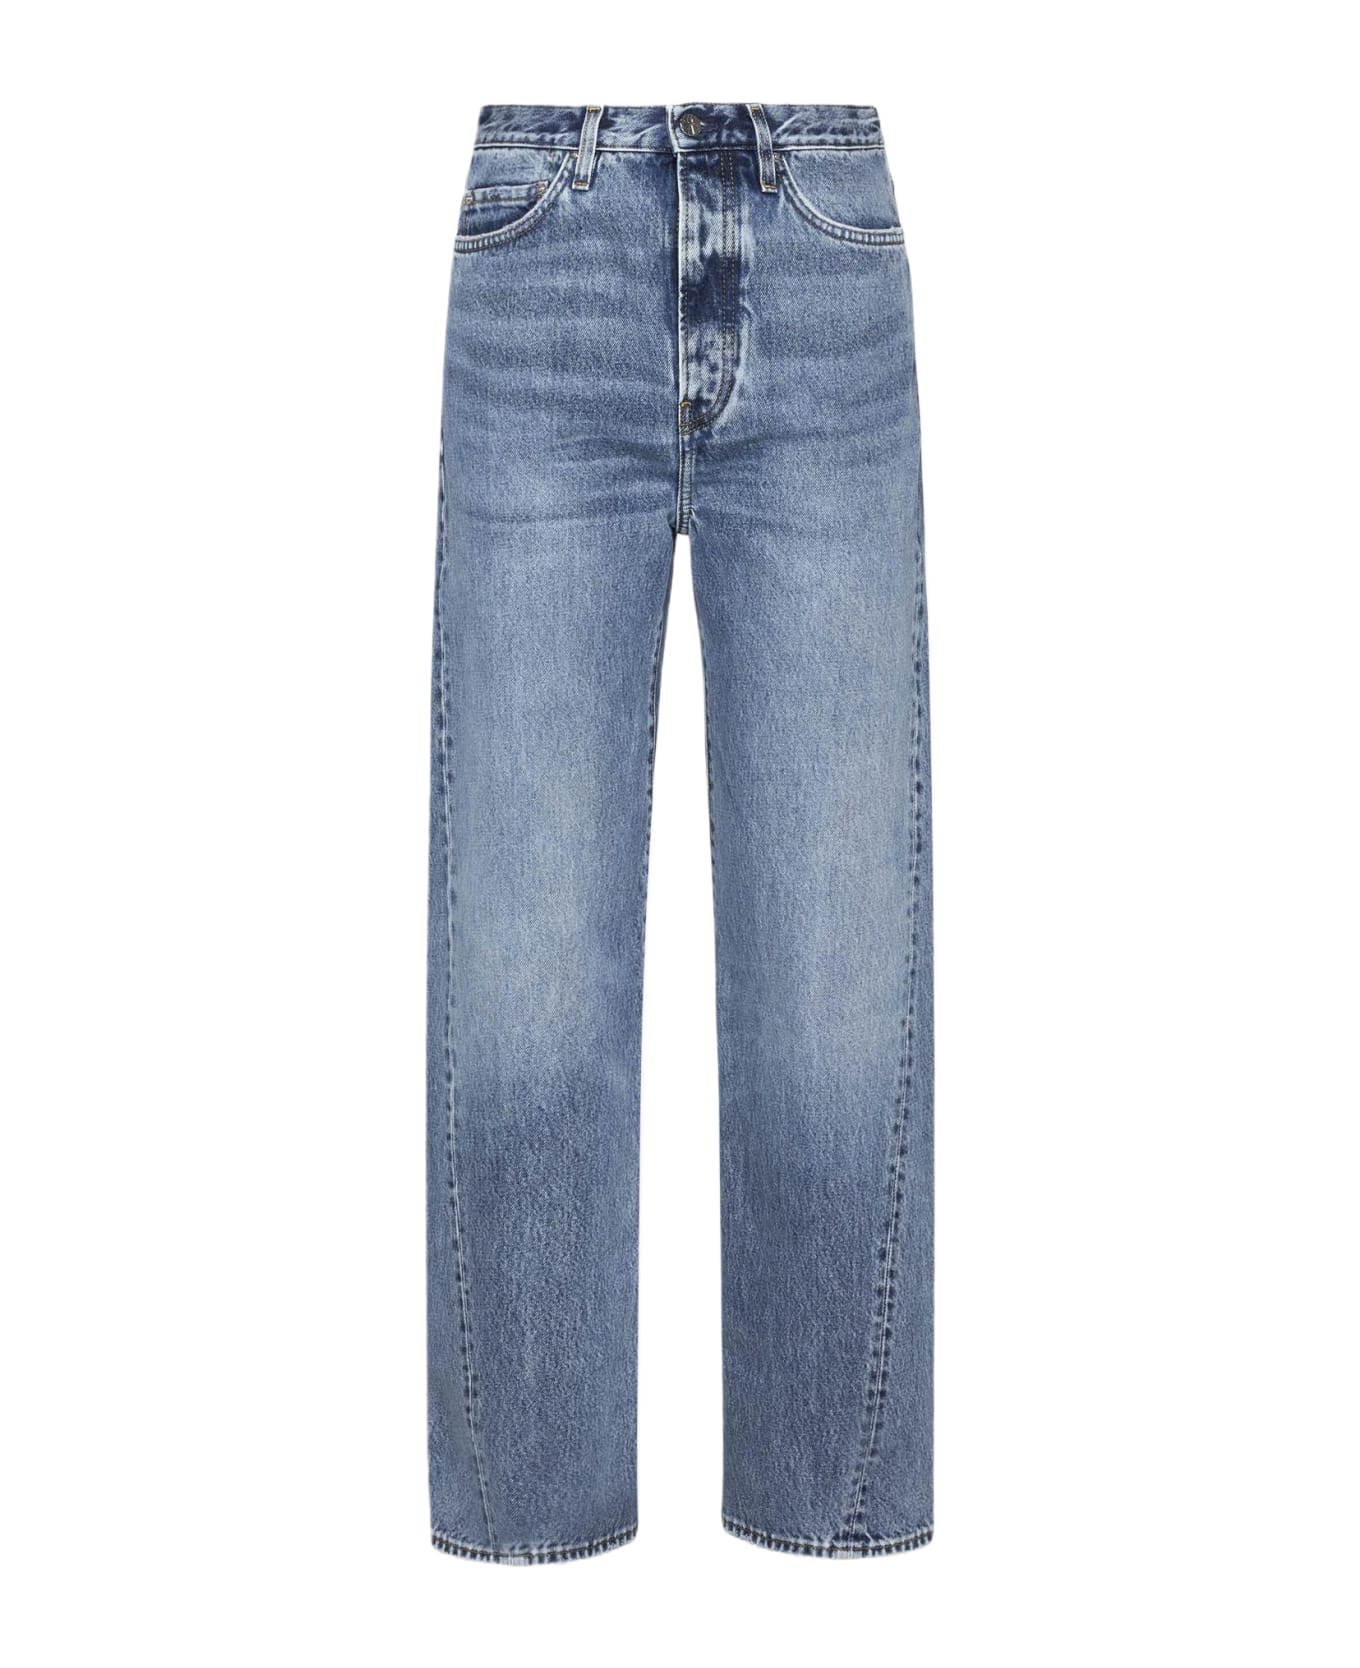 Totême Twisted Jeans - 485 WORN BLUE